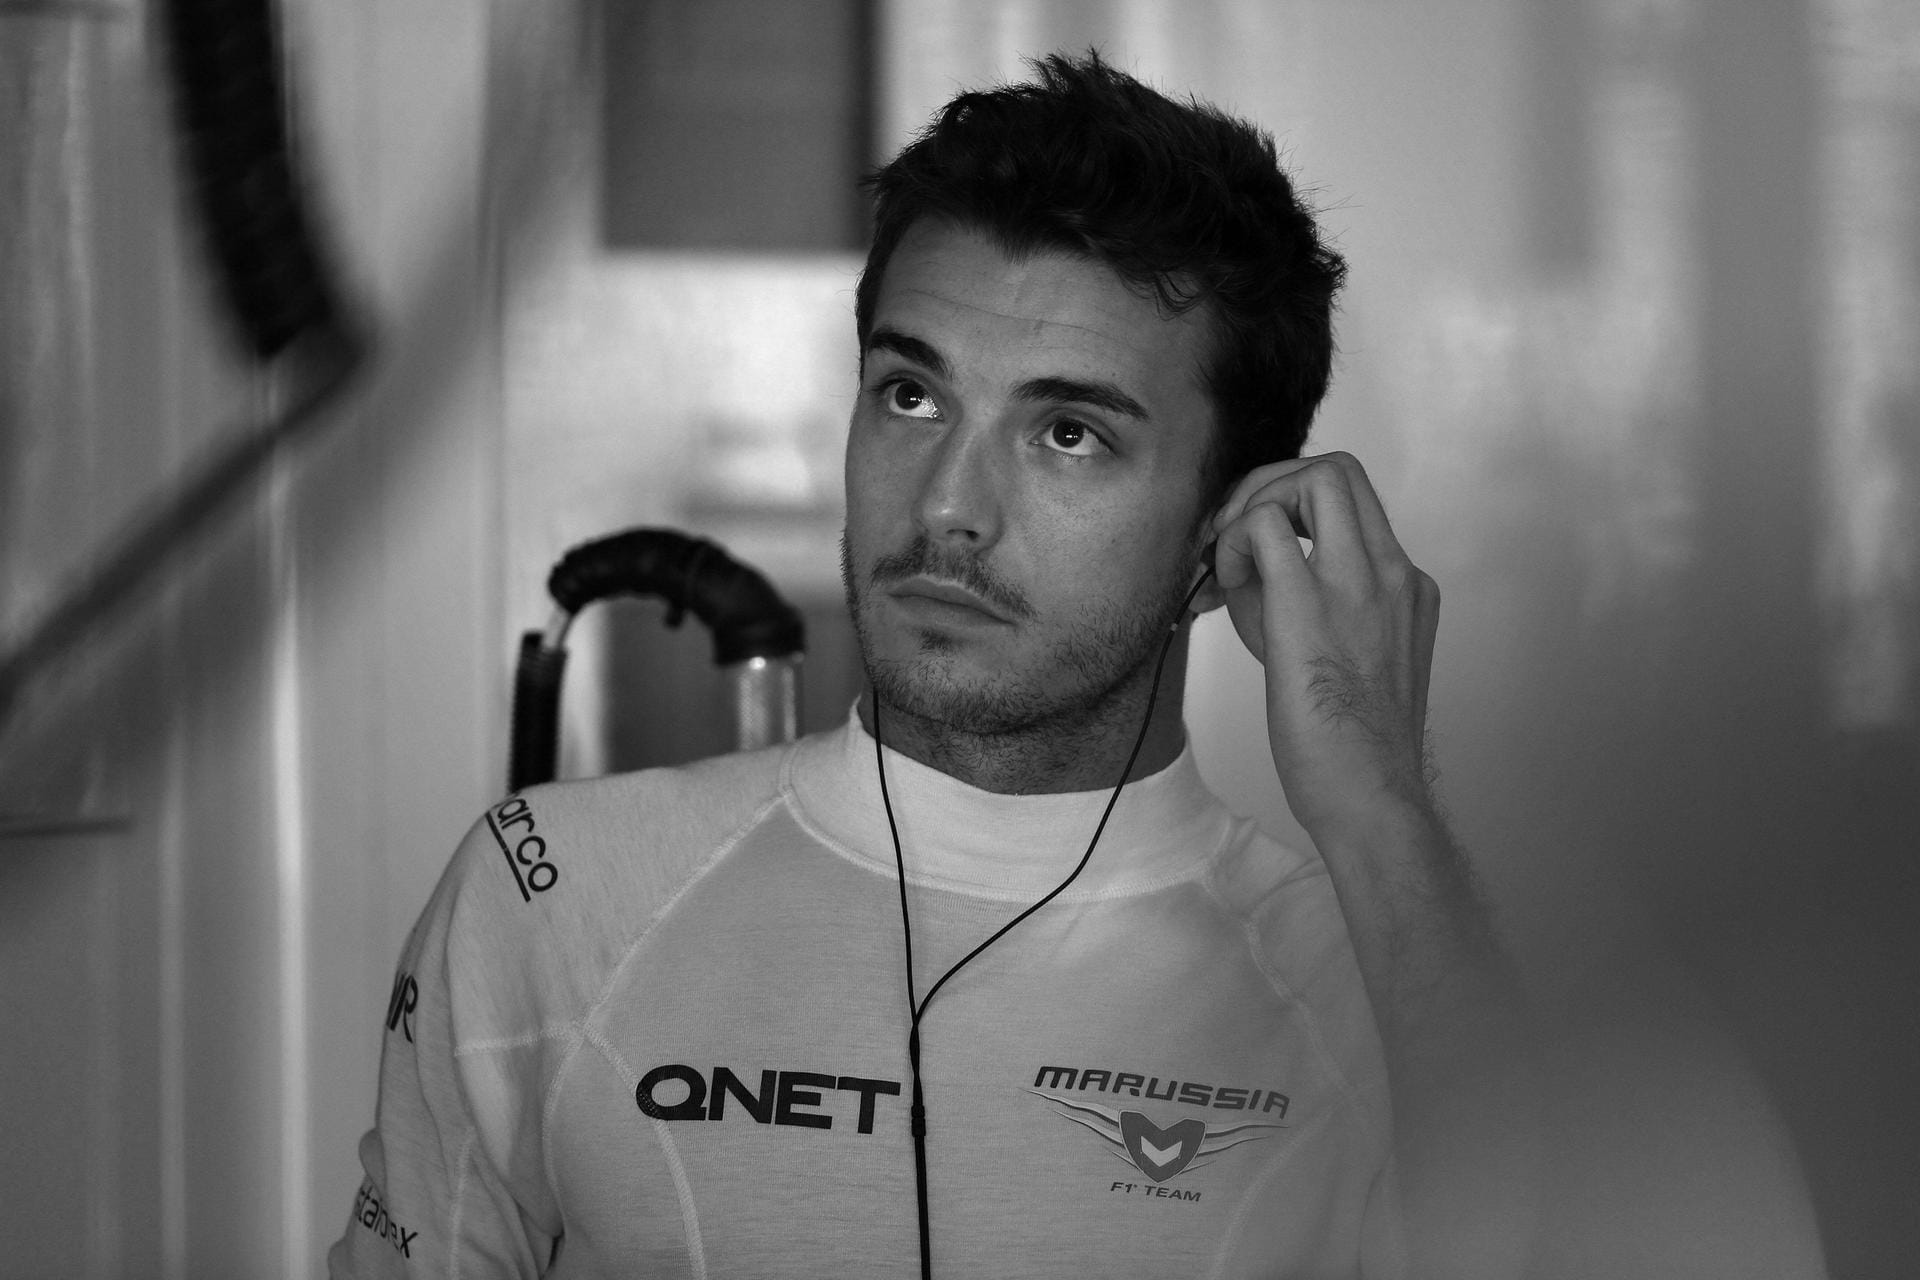 Der Formel-1-Pilot Jules Bianchi starb am 17. Juli im Alter von 25 Jahren an den Folgen seines Unfalls knapp ein Jahr zuvor. Bianchi war 2014 beim Großen Preis von Japan in ein Bergungsfahrzeug geprallt und lag bis zu seinem Tod im künstlichen Koma.